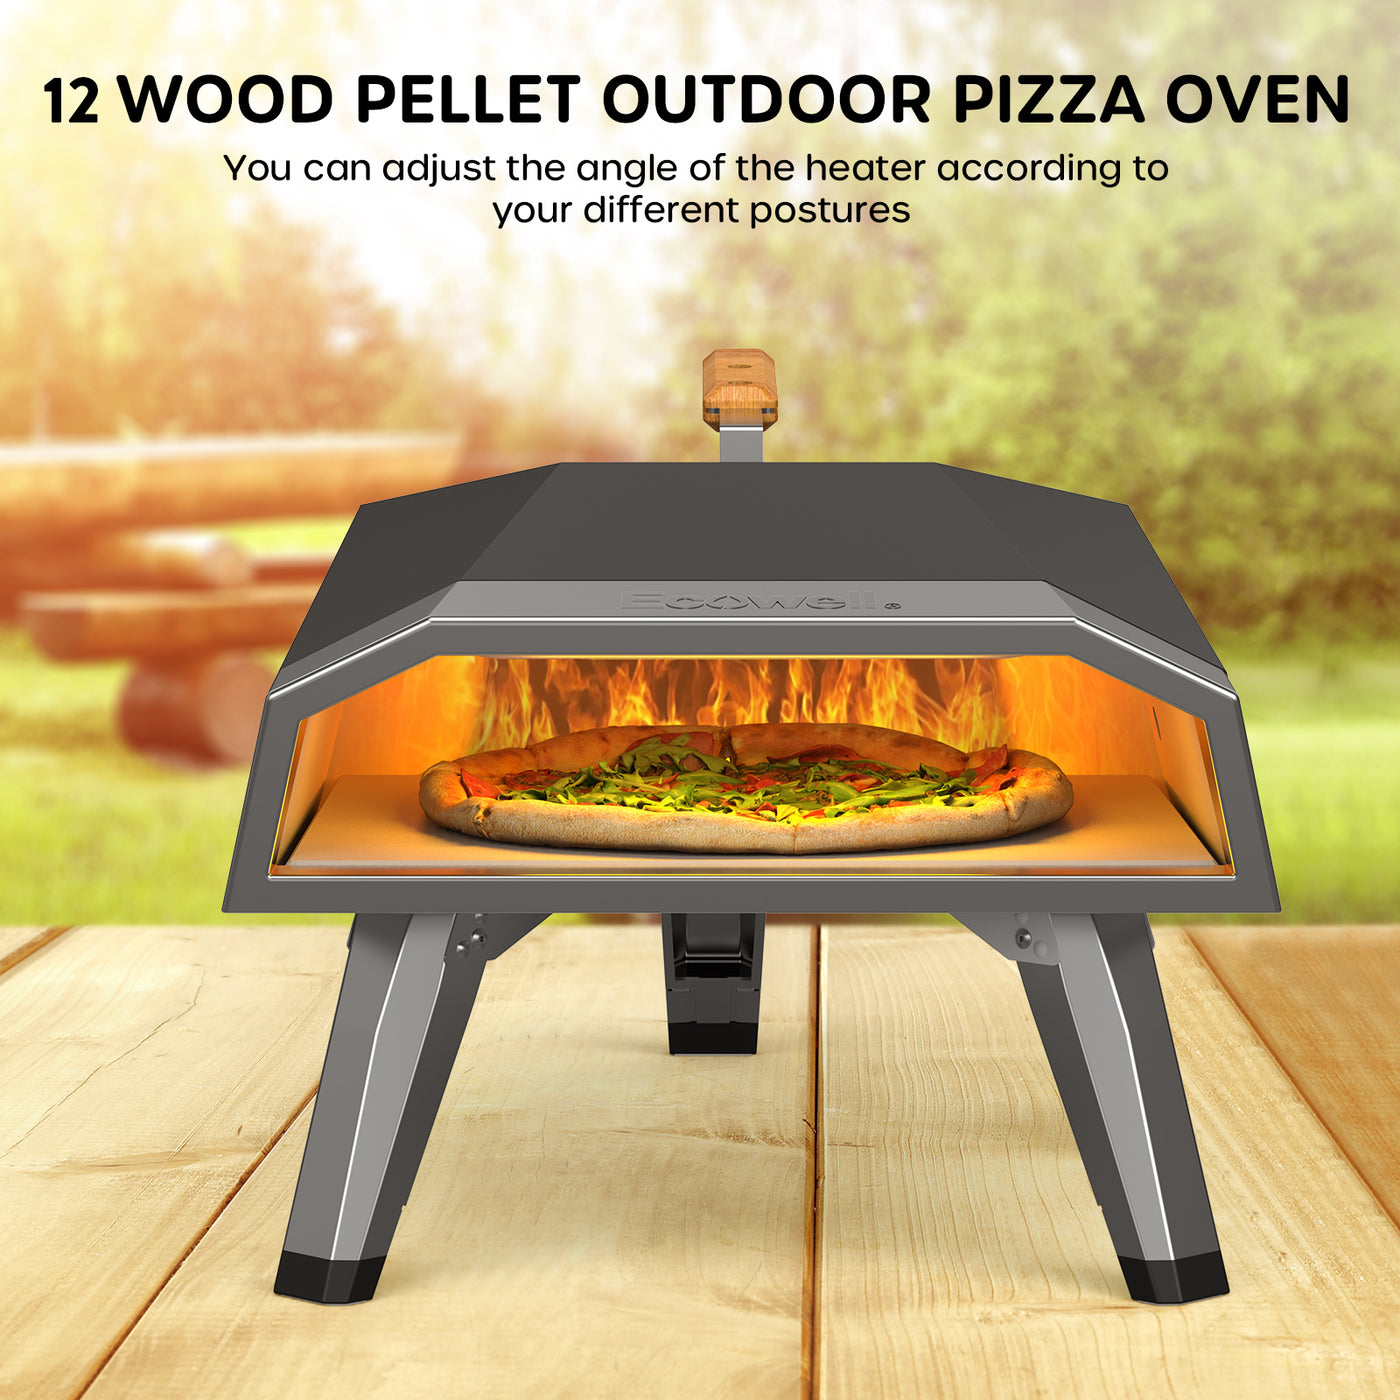 Horno de pizza al aire libre de pellets de madera ECOWELL de 12 "